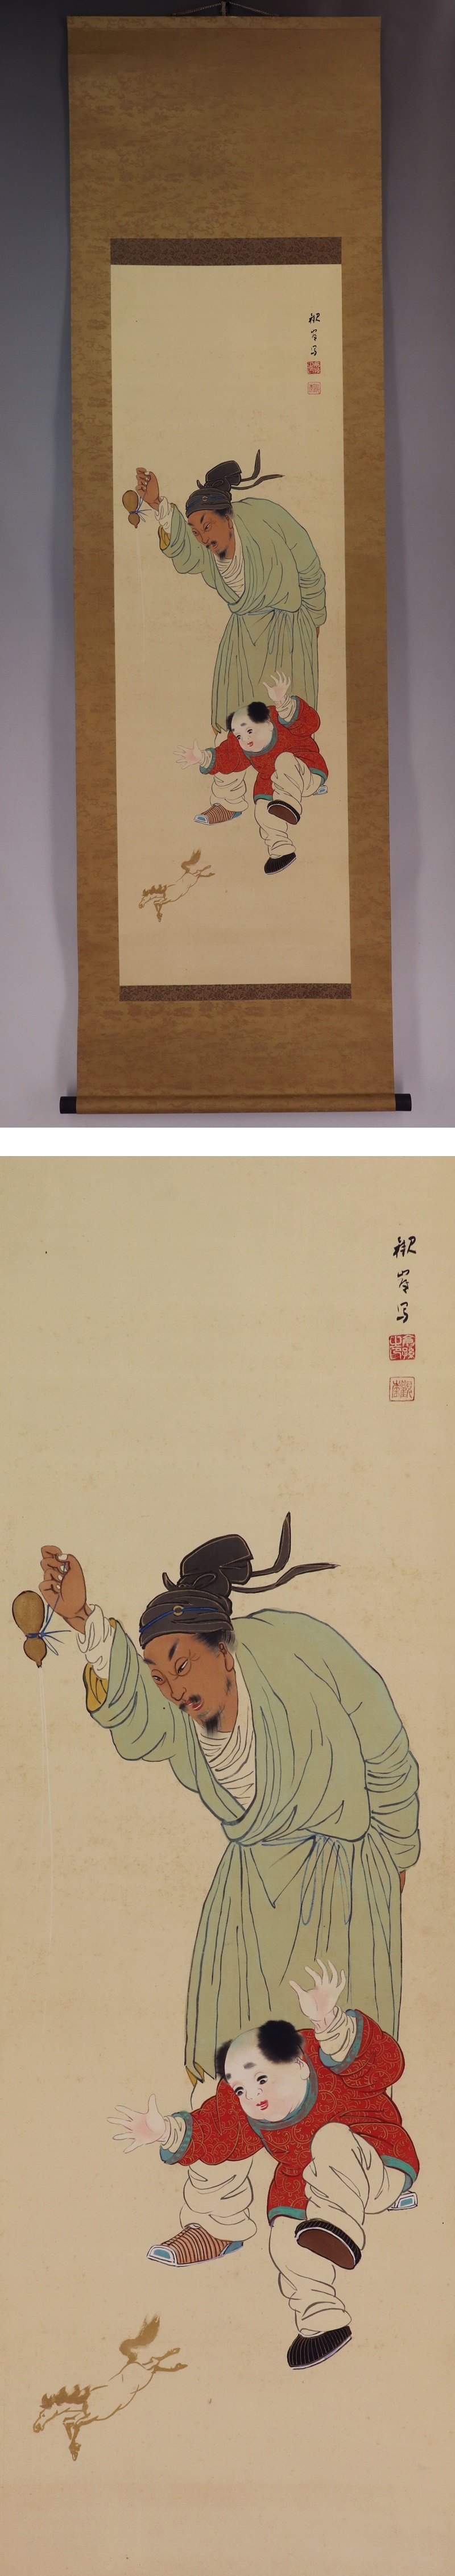 お買い得格安高倉観崖◆絹本◆掛軸 v11010 人物、菩薩